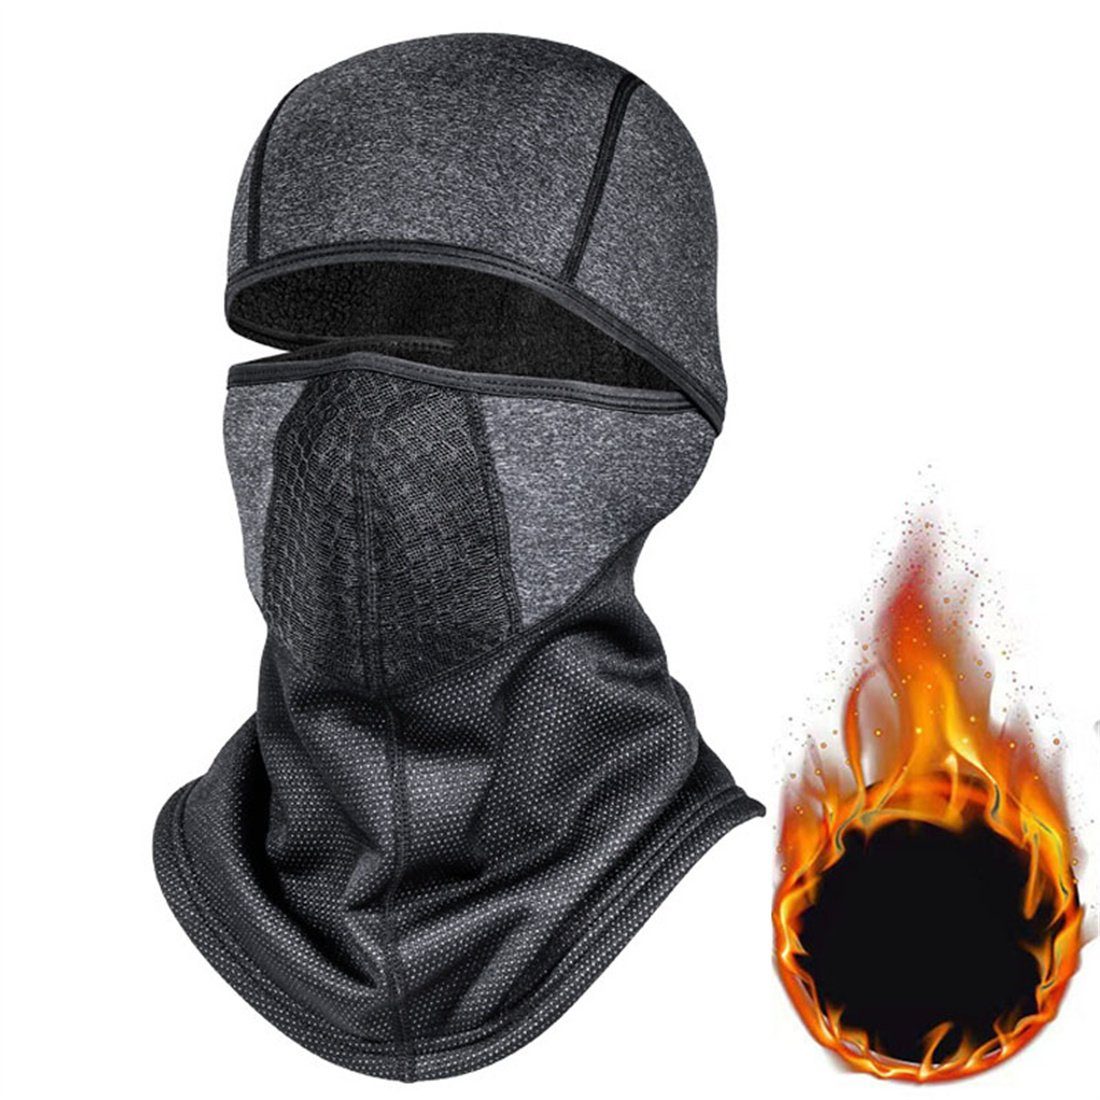 Sturmhaube unisex Halsschutz Outdoor-Radfahren dunkelgrau DÖRÖY Winter-Ski-Maske, Kopfbedeckung,